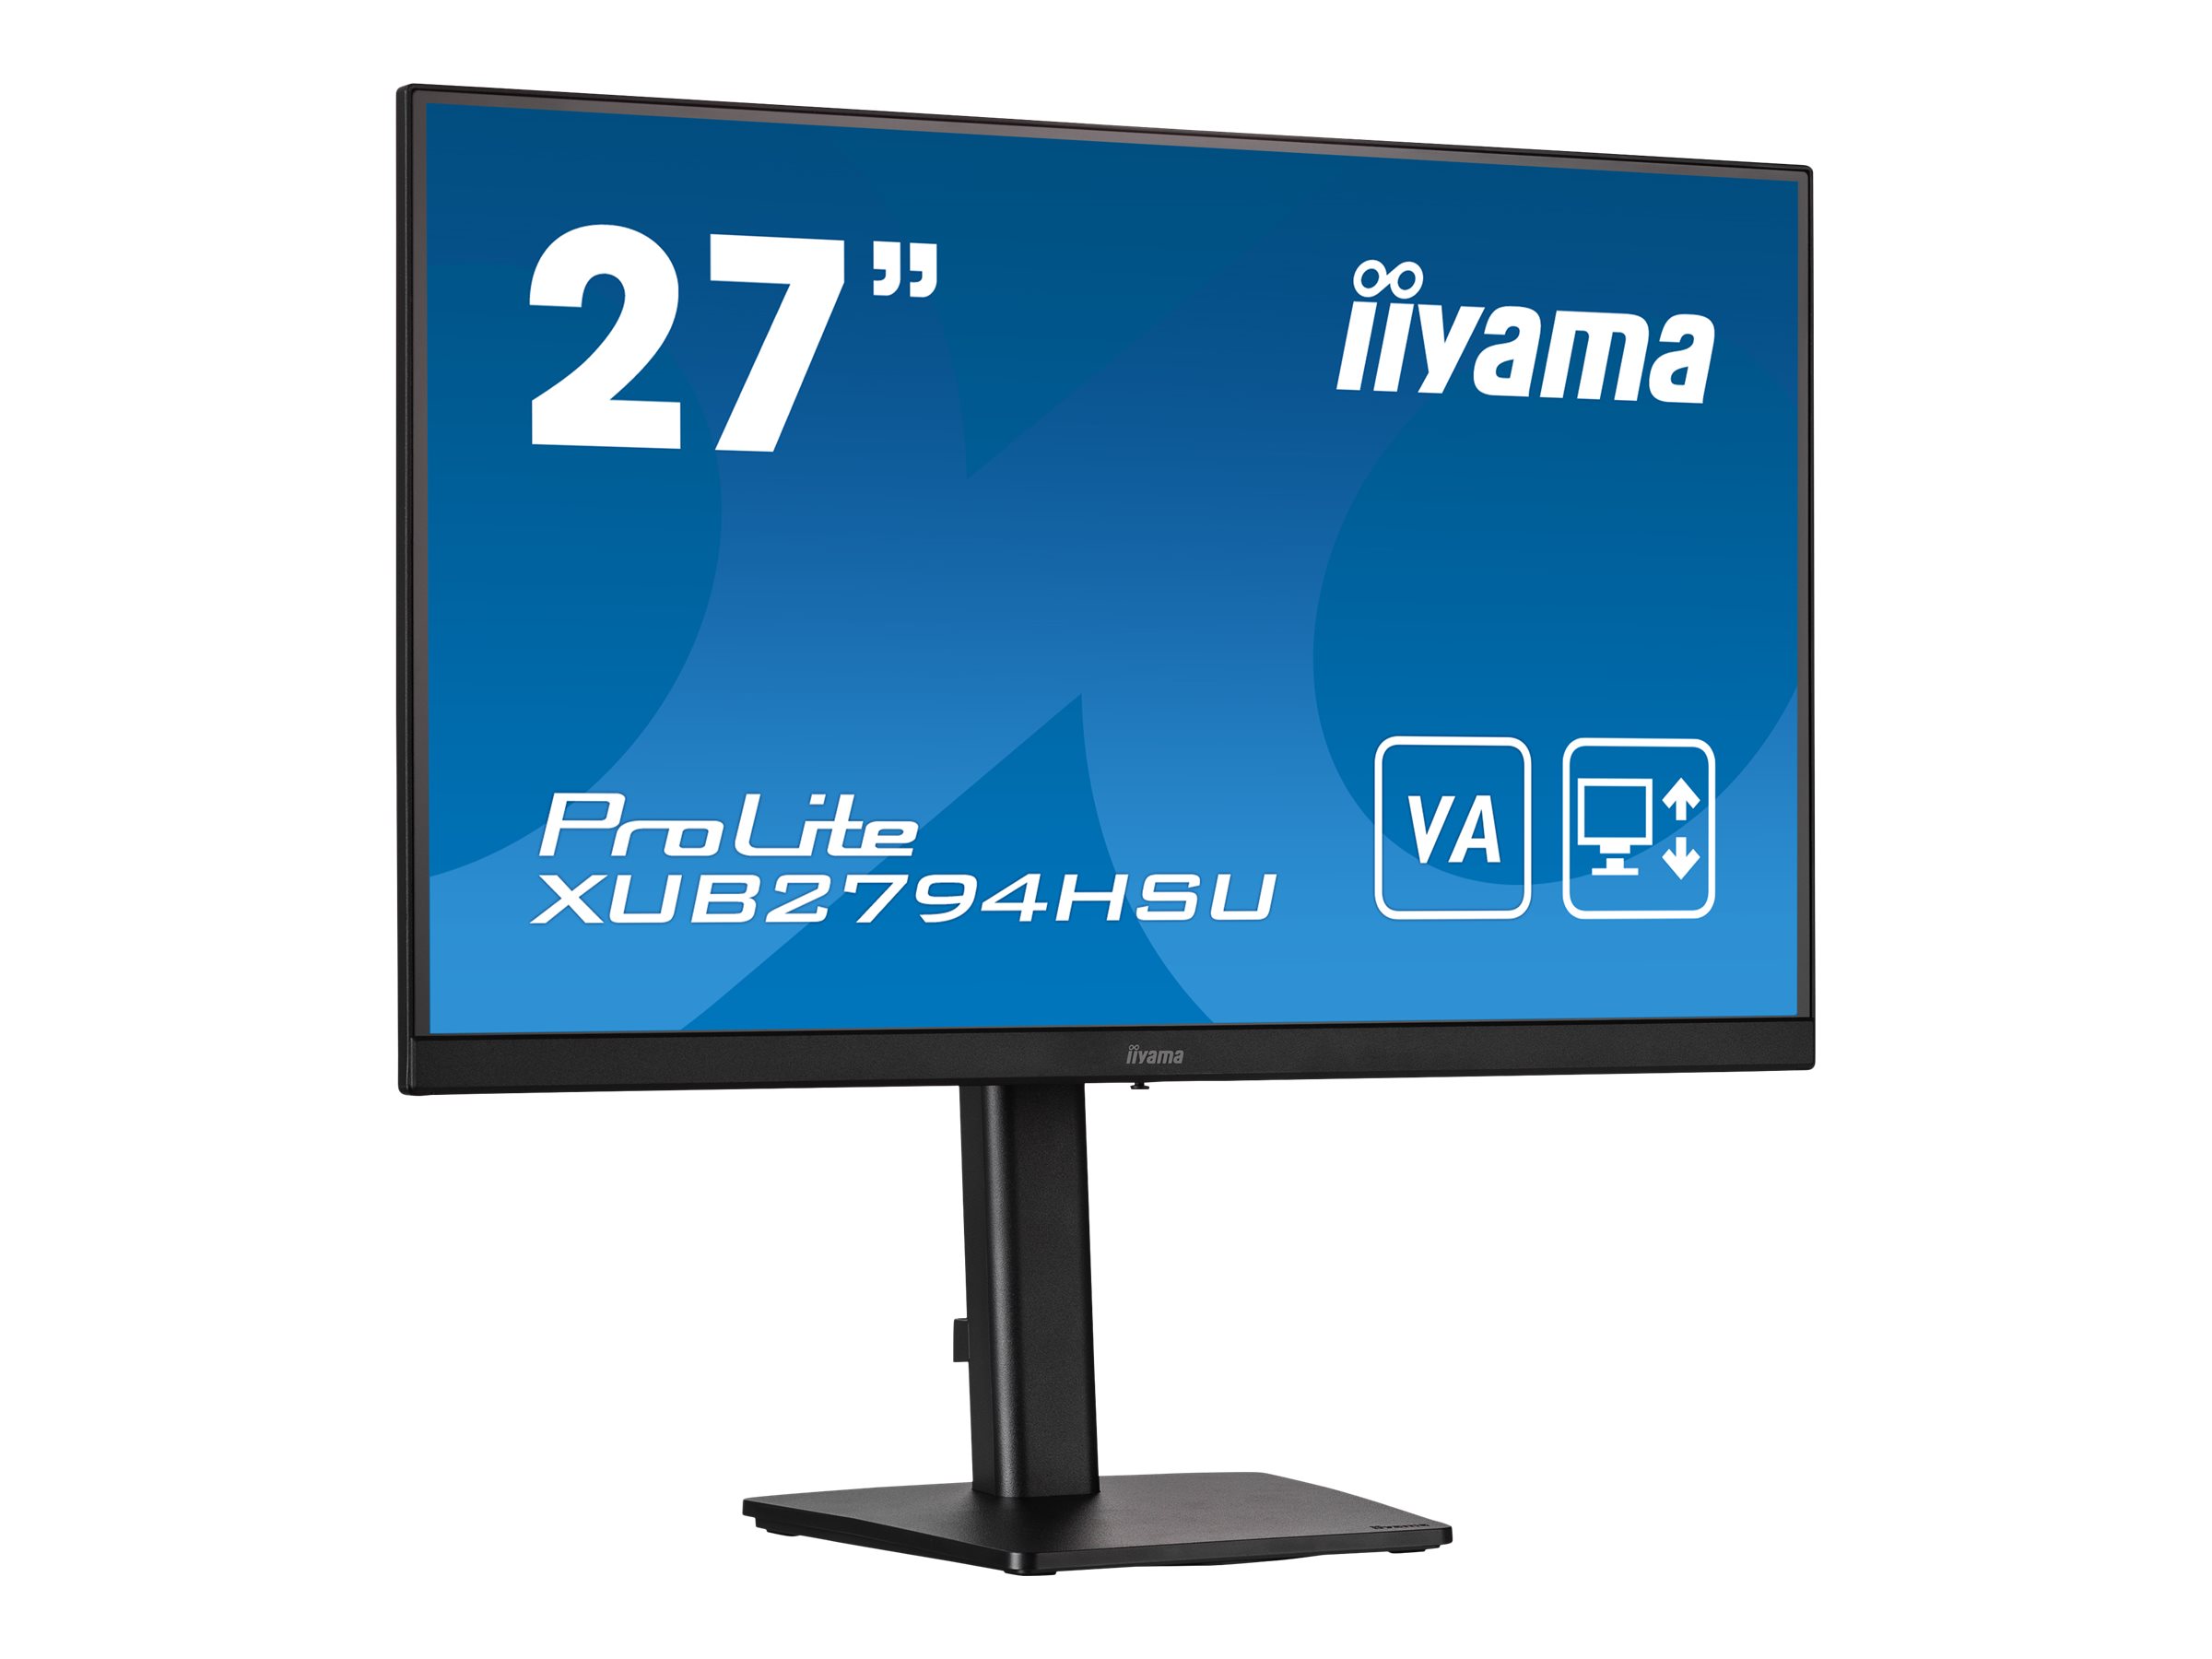 27" ETE VA-panel, 1920x1080, 15cm height adj. stand, 250cd/m2, 4ms, Speakers, HDMI, DisplayPort, Speakers, USB-HUB 2x 3.0